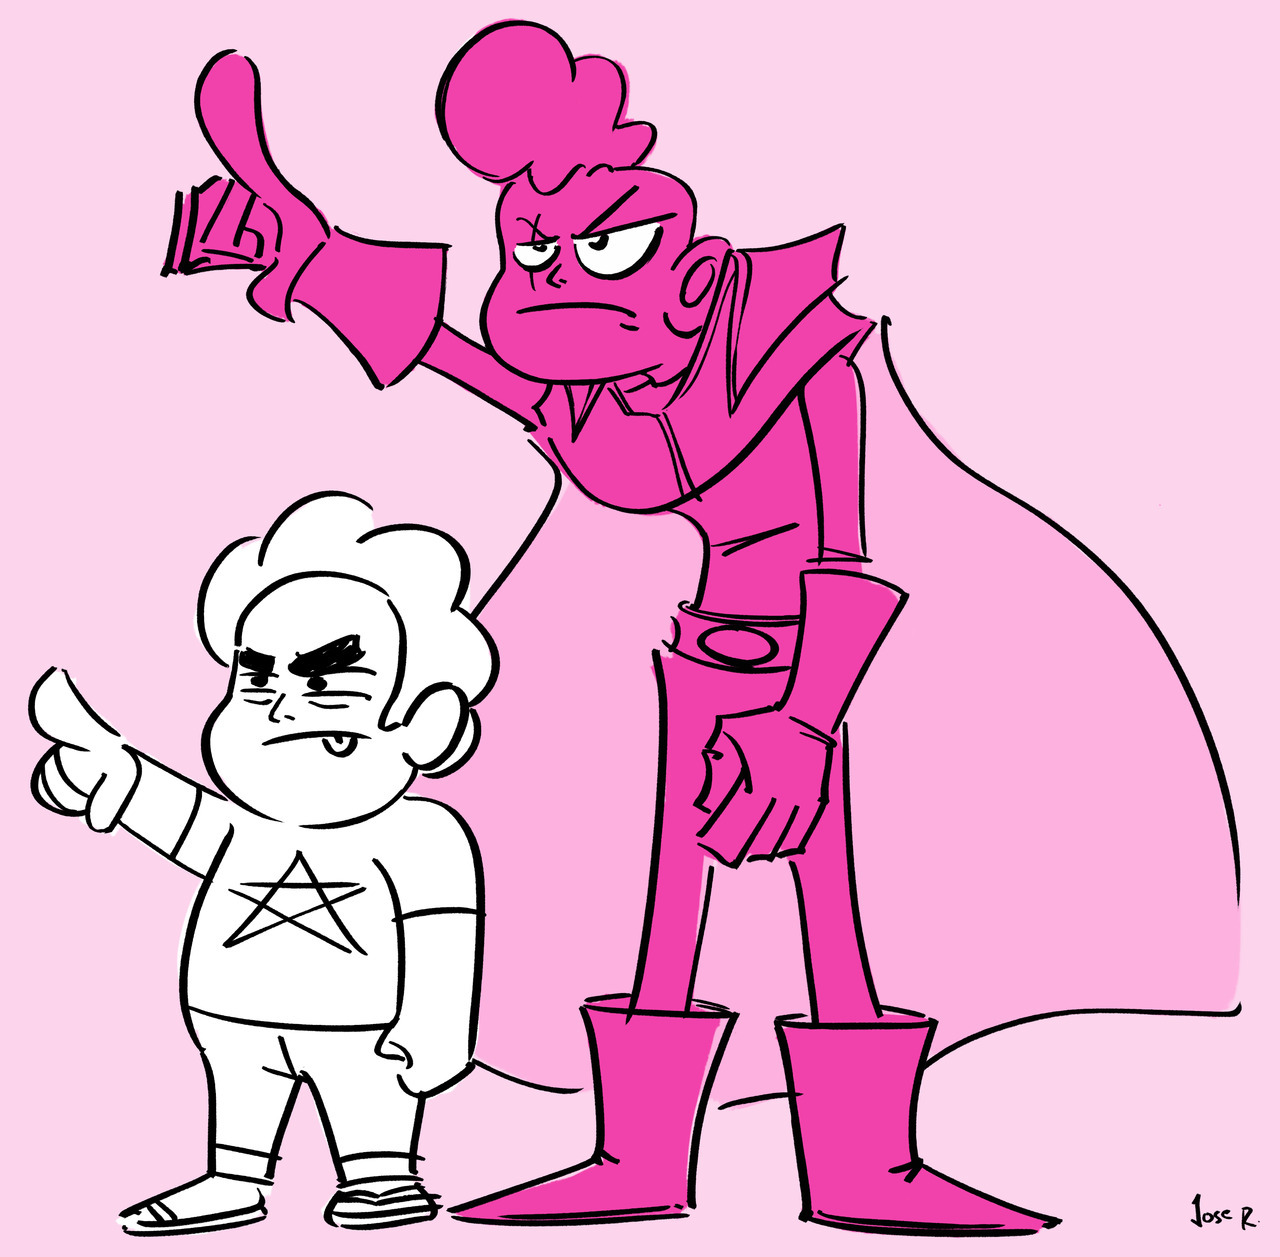 Pink Lars, Best Lars. Also Steven